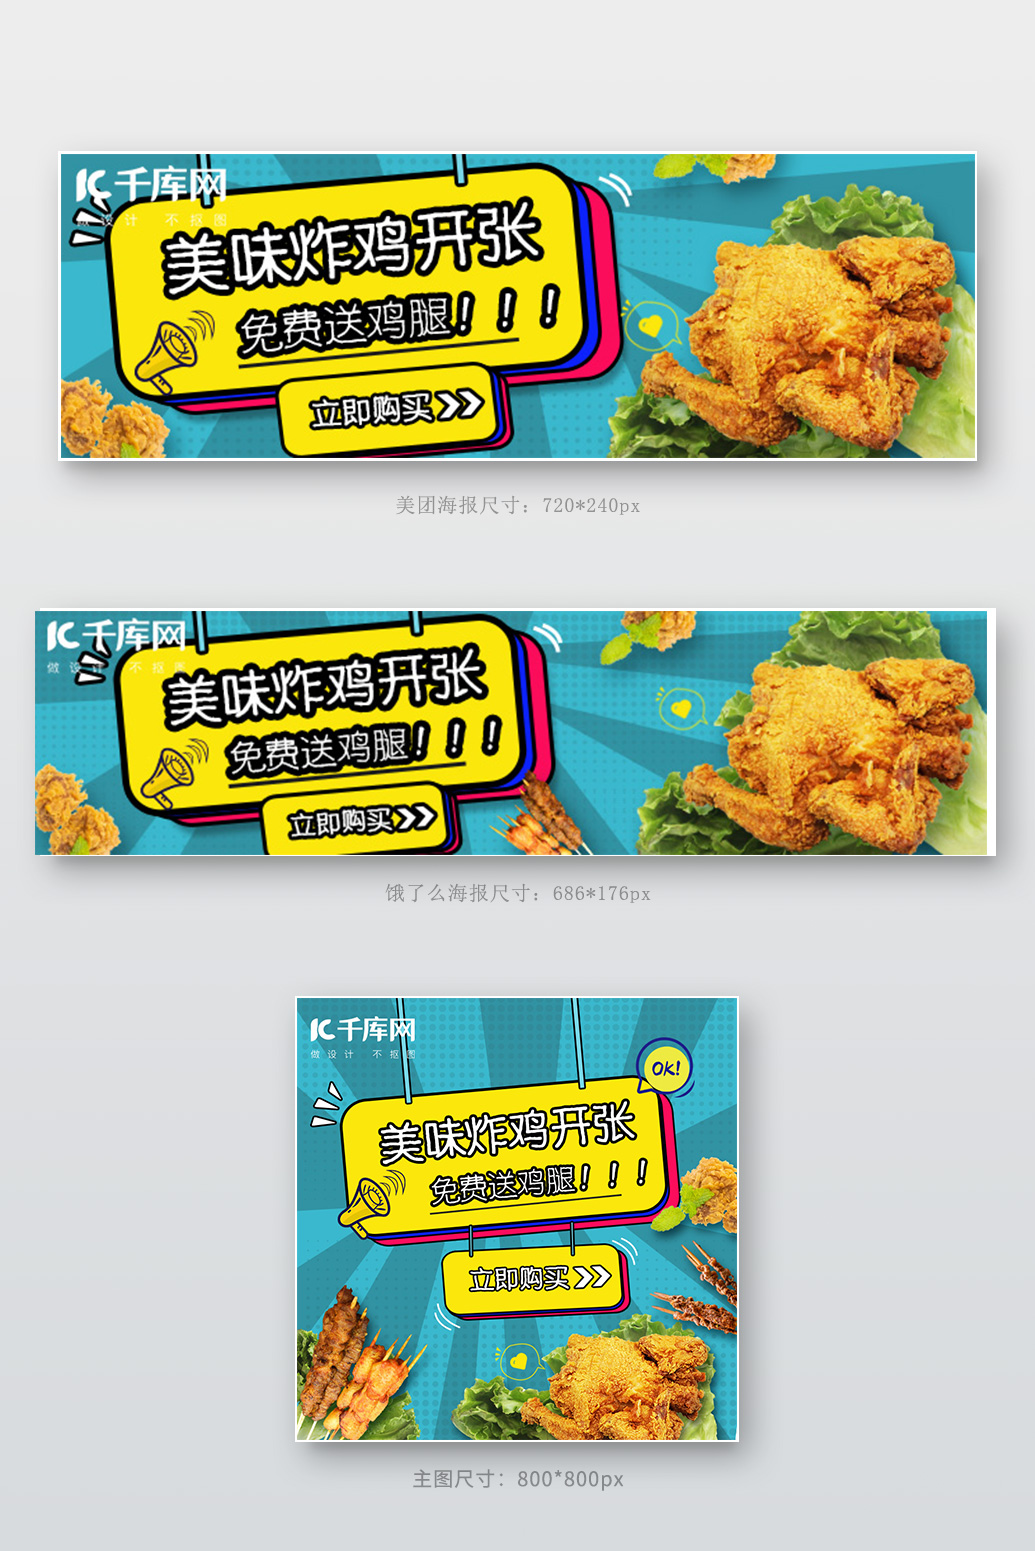 美食饿了么外卖炸鸡蓝色波普风电商外面海报店招banner图片